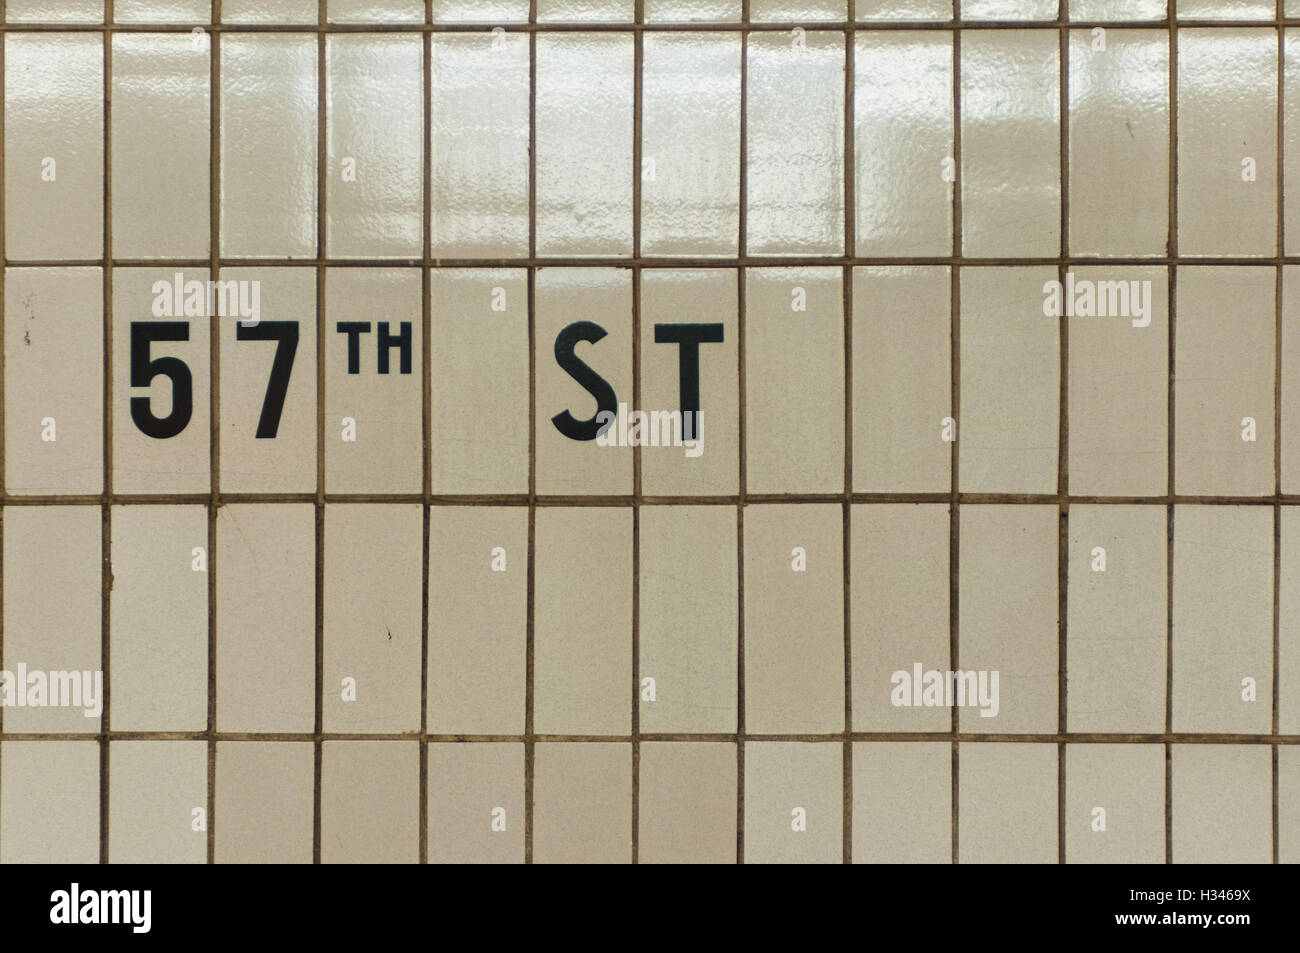 La Ciudad de Nueva York la estación de metro de 57th Street carteles de mosaico Foto de stock